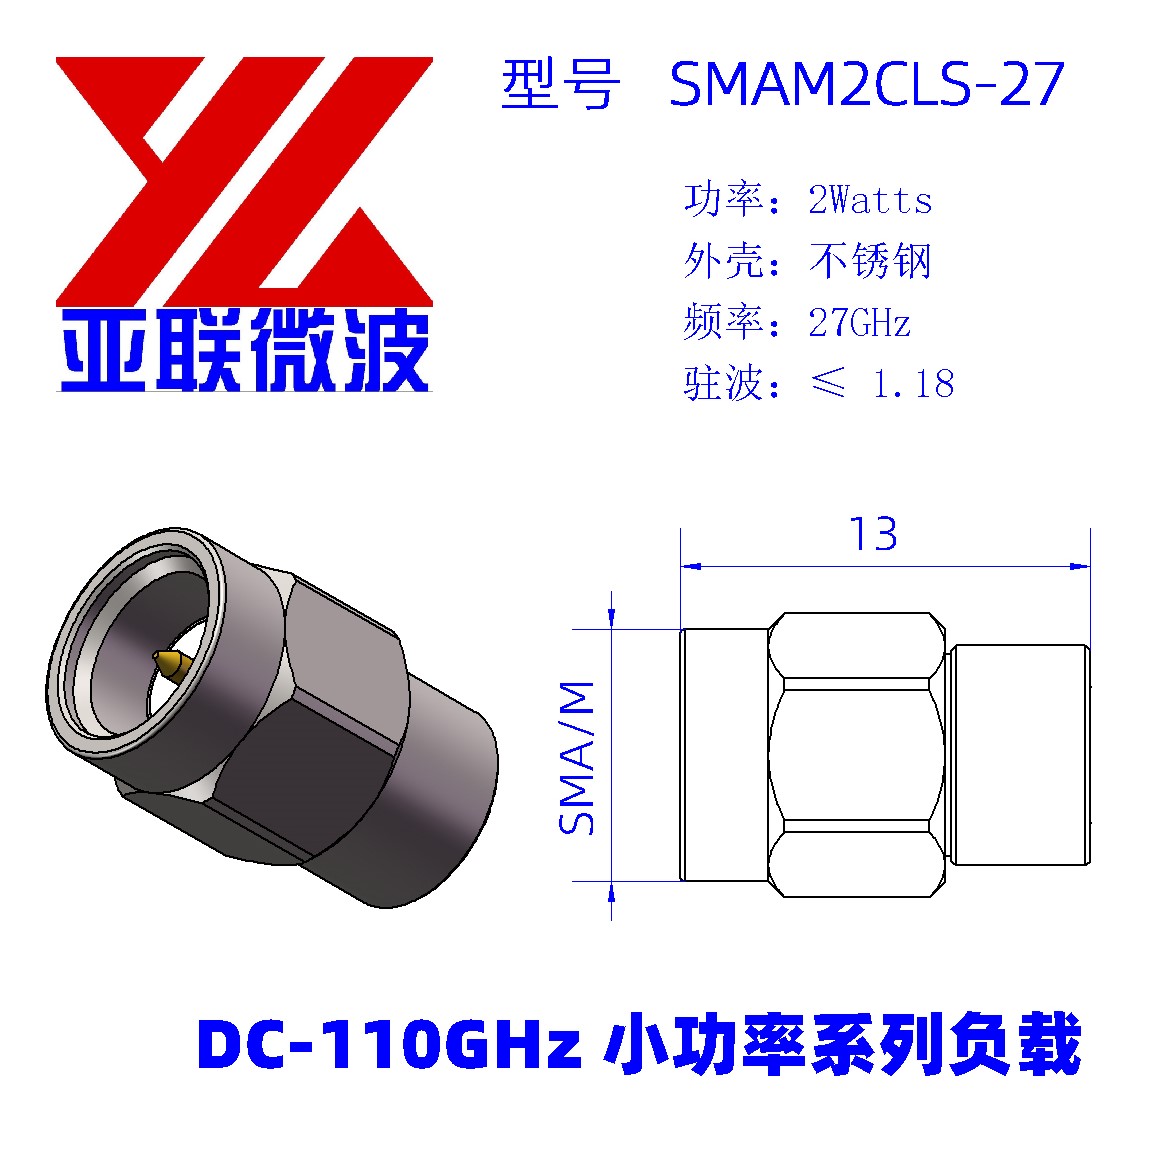 SMAM2CL-27装配体